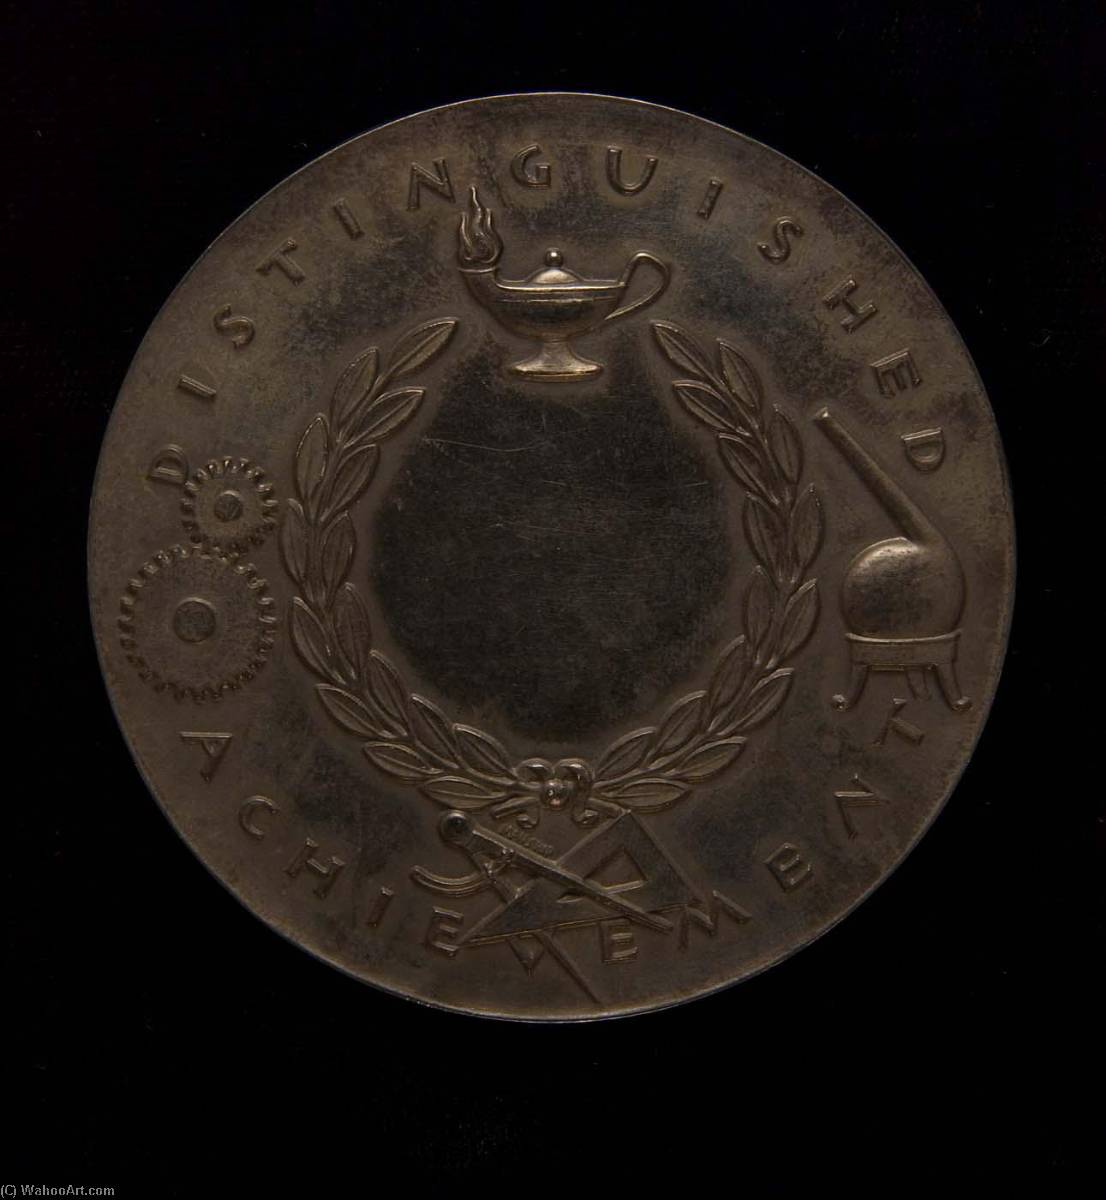 WikiOO.org - Encyclopedia of Fine Arts - Malba, Artwork Paul Manship - John Wesley Hyatt Award Medal (reverse)